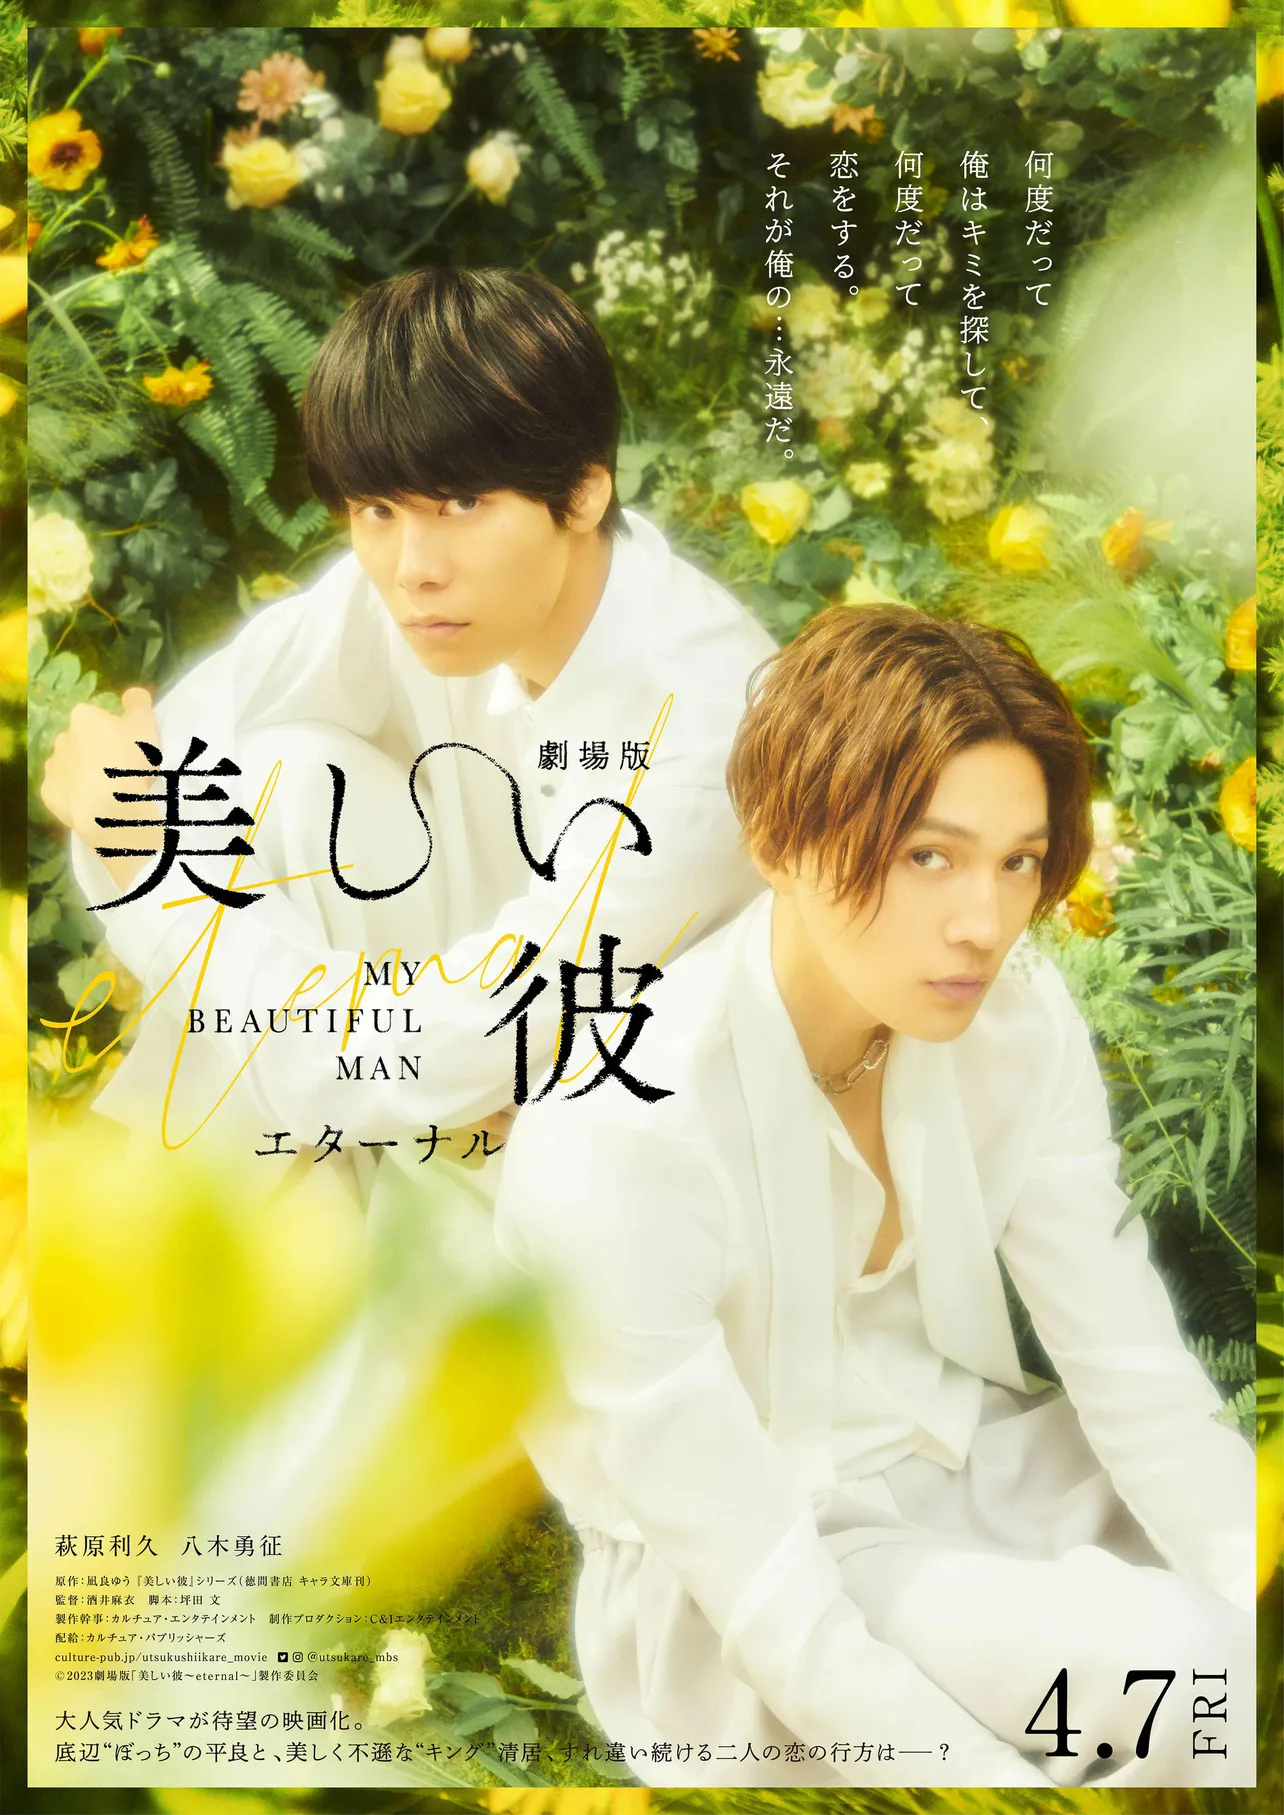 萩原“平良”と八木“清居”、淡い⻩⾊の花々に囲まれた美しいポスター